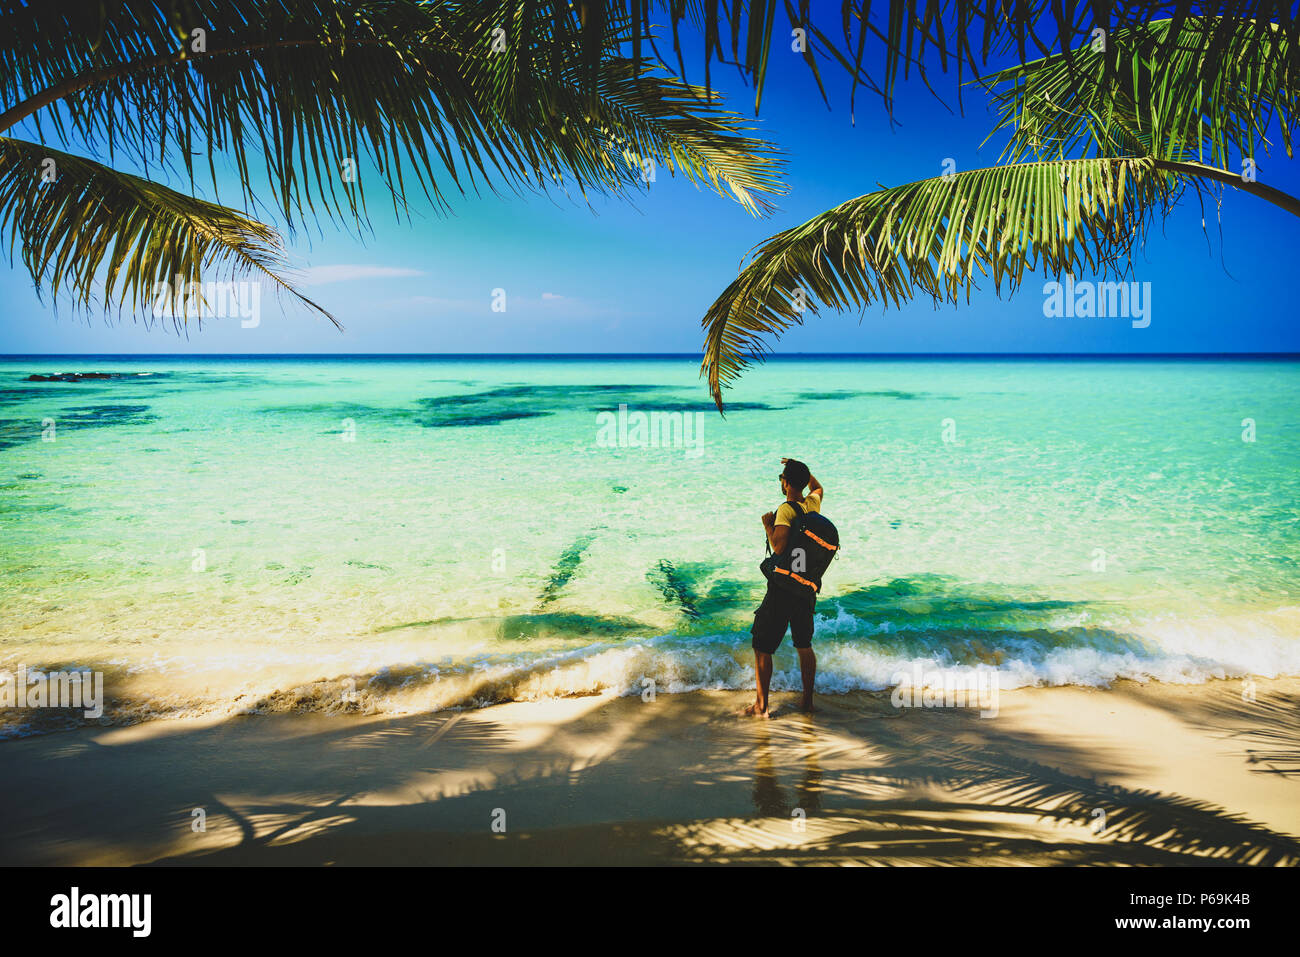 Photographe voyageur Silhouette avec sac à dos, debout près de la plage tropicale étonnante nature paysage en arrière-plan Banque D'Images